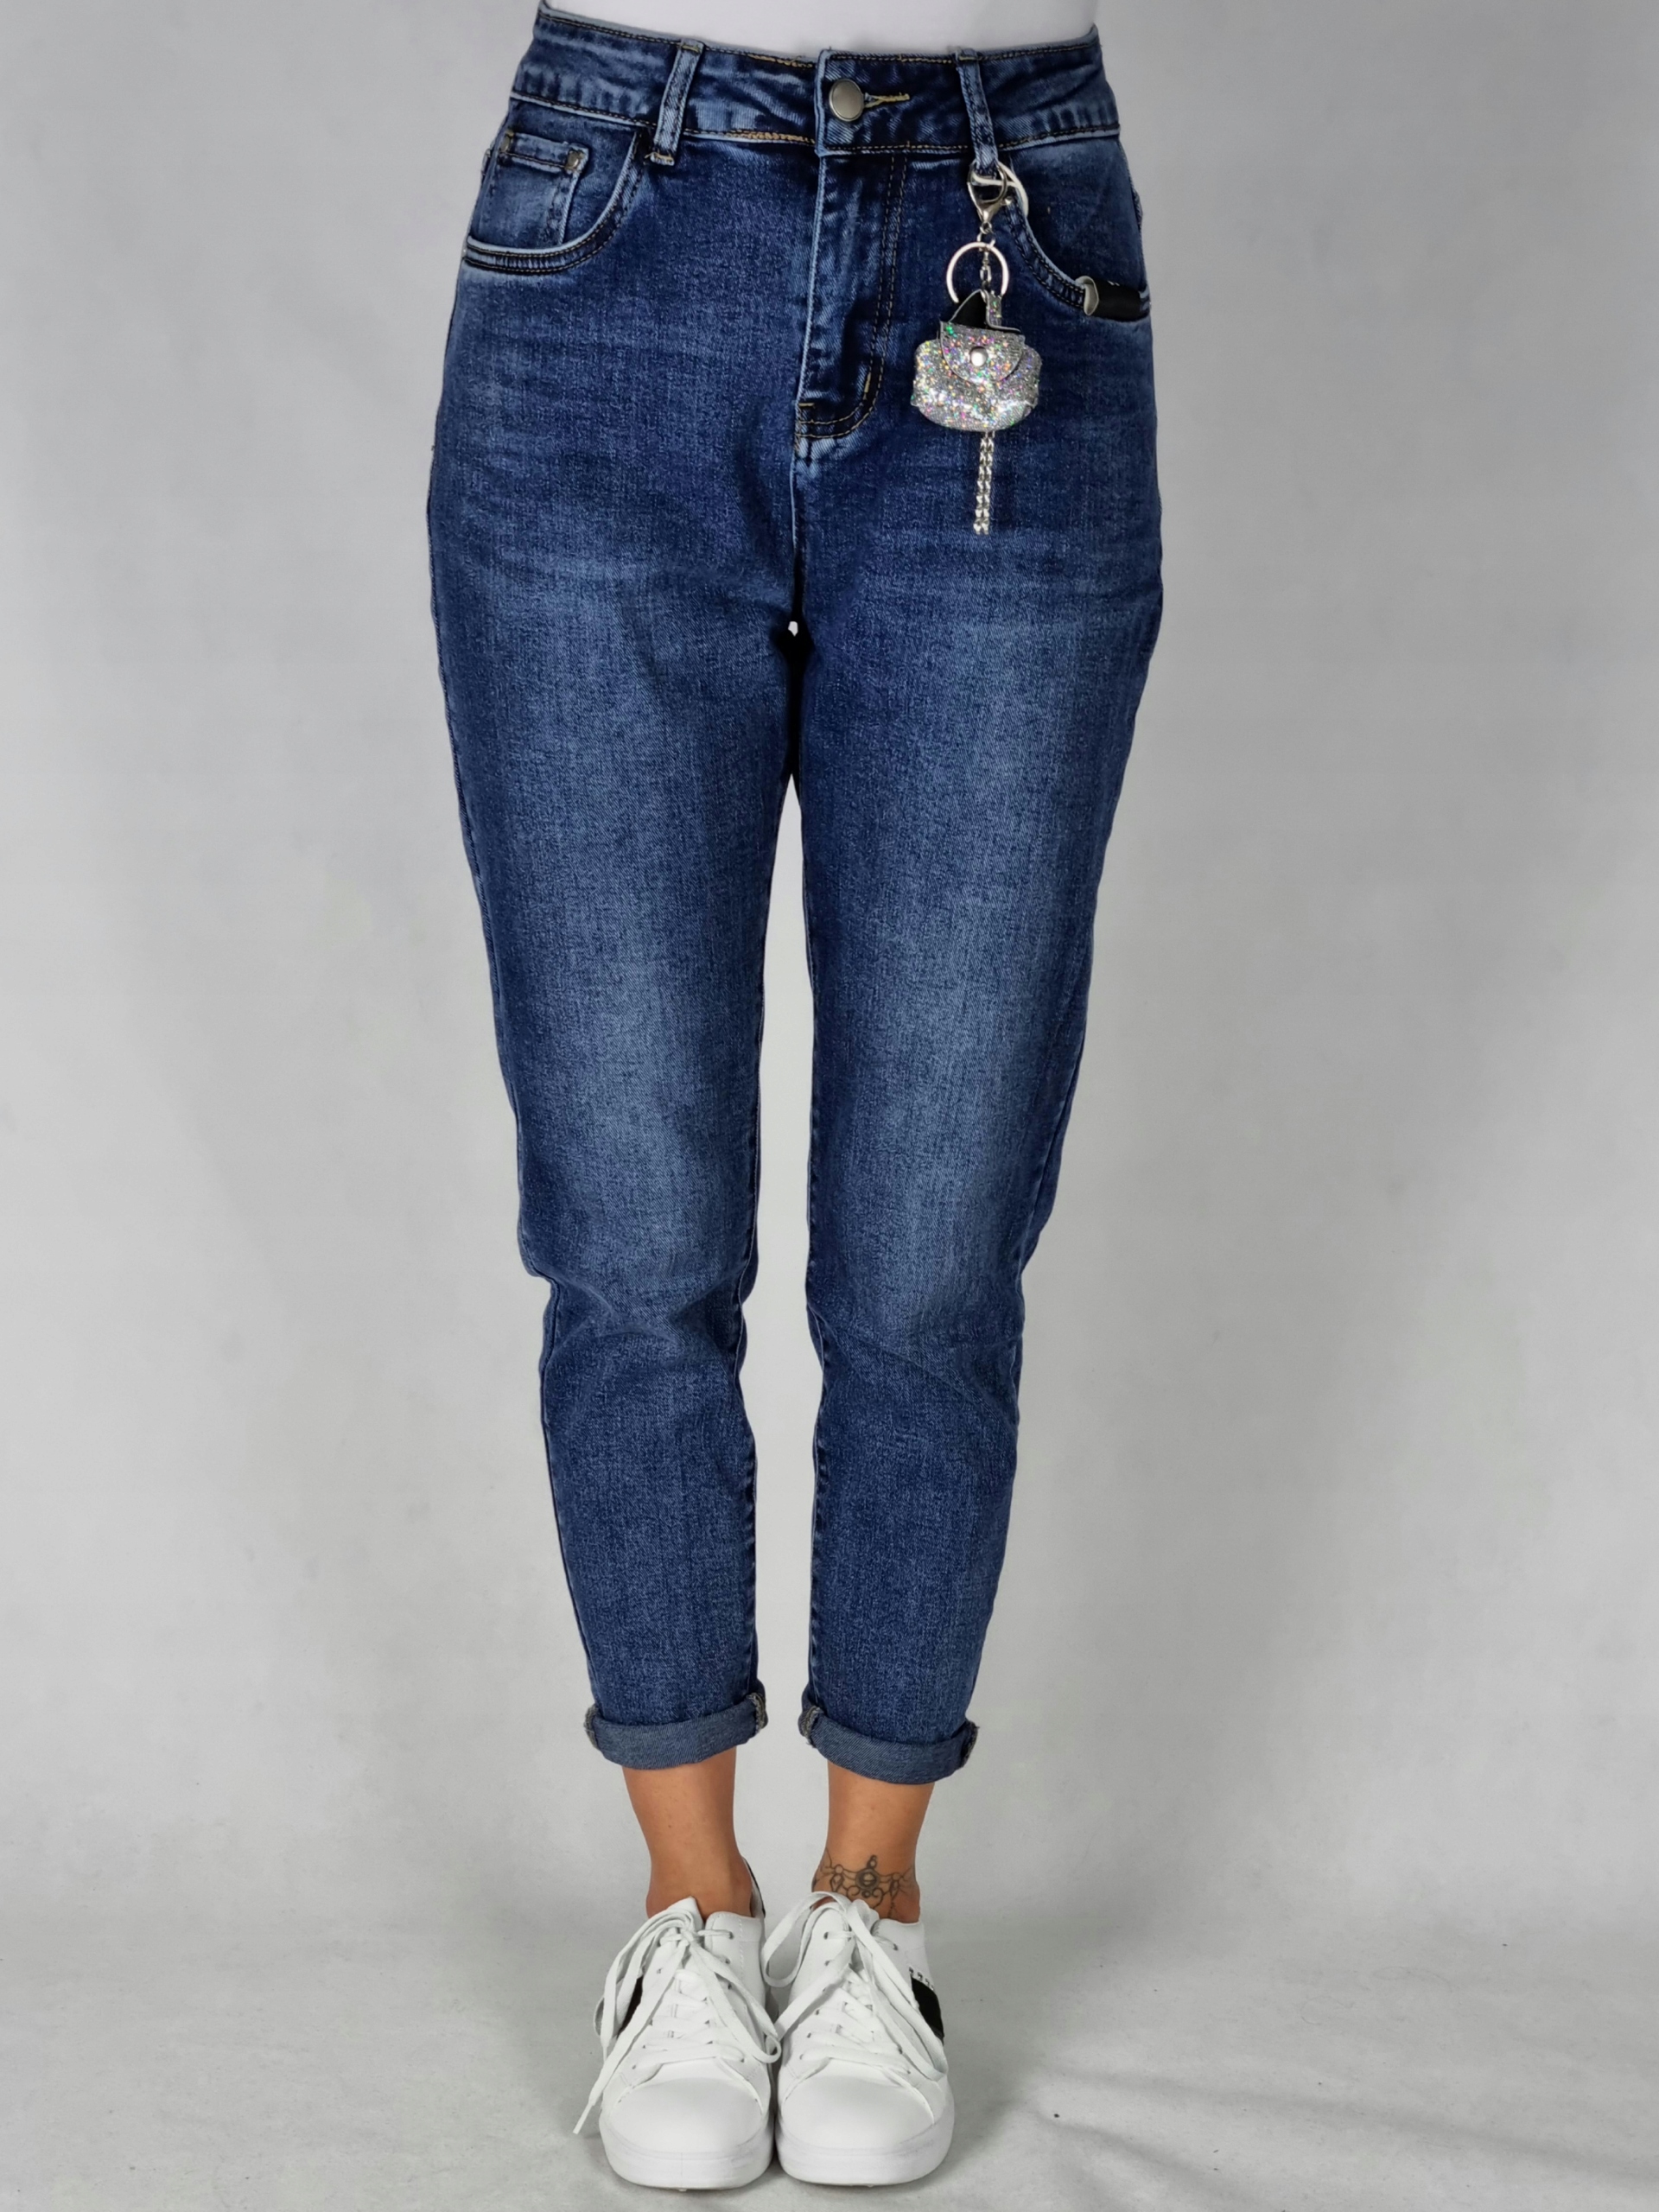 M. SARA BOYFRIEND джинсовые брюки размер M Mark other Brand